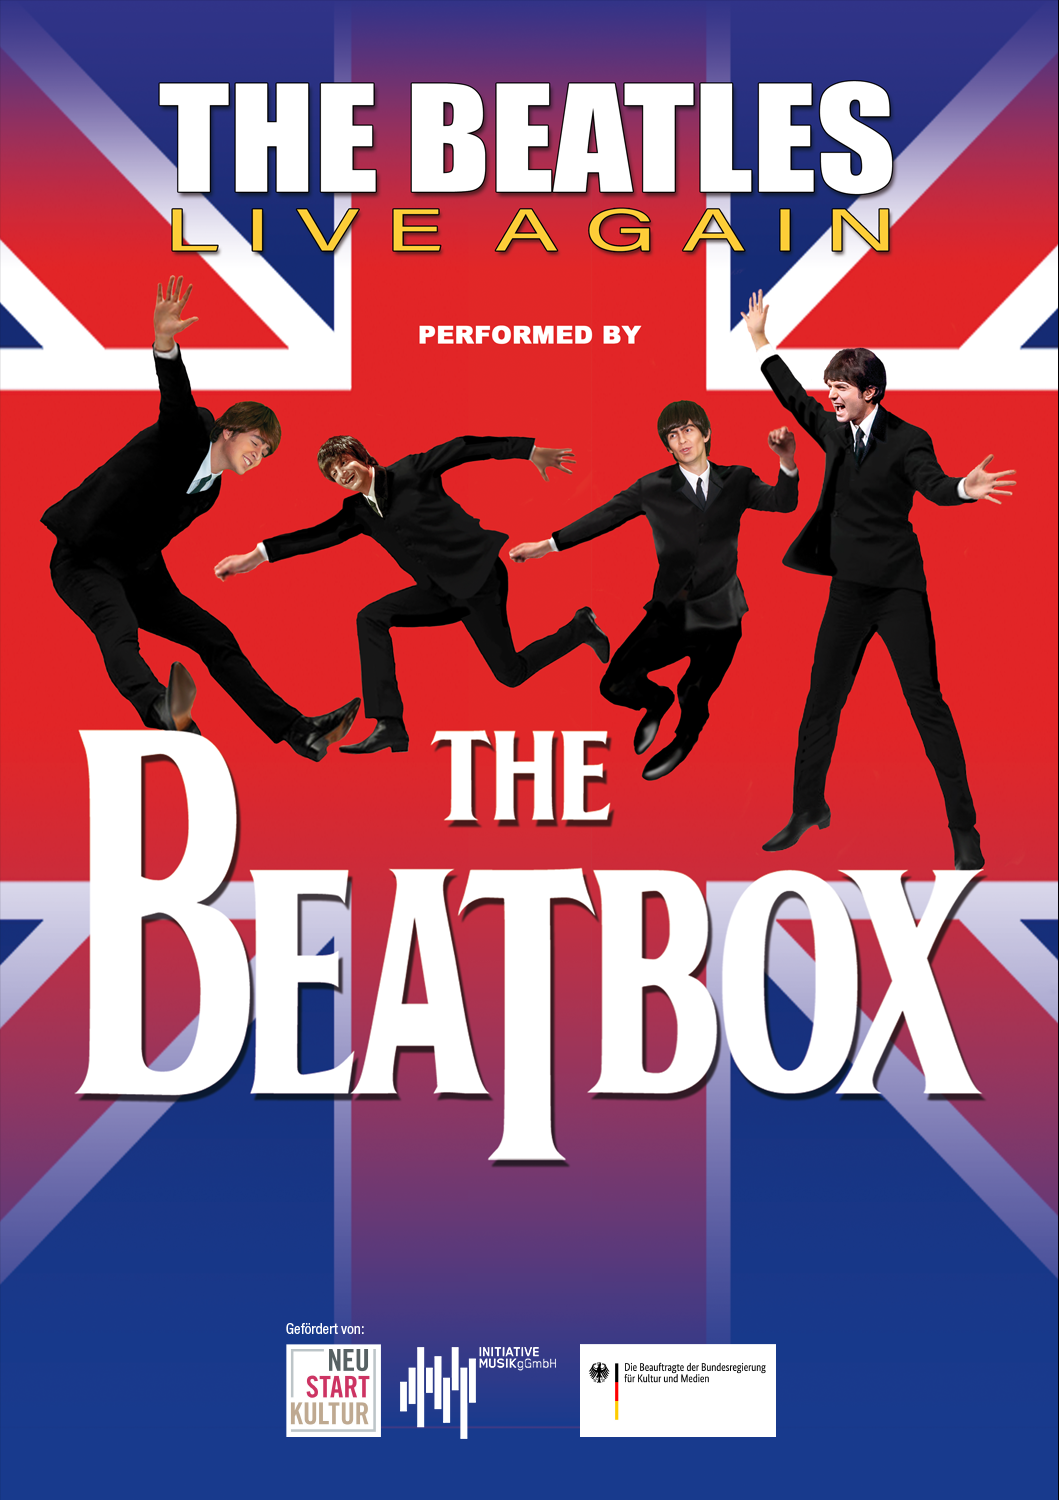 The Beatbox spielen Musik von The Beatles